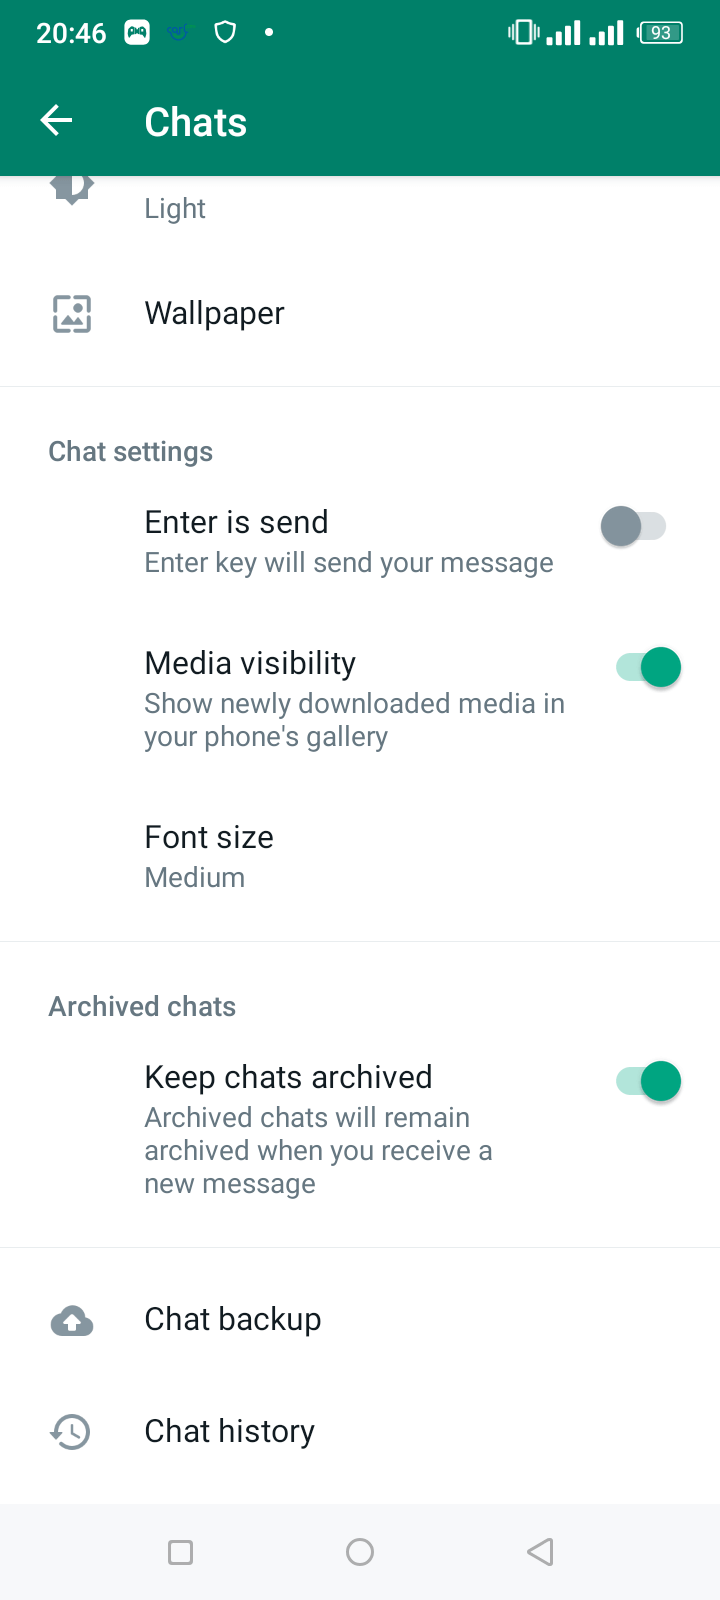 Select Chat Backup